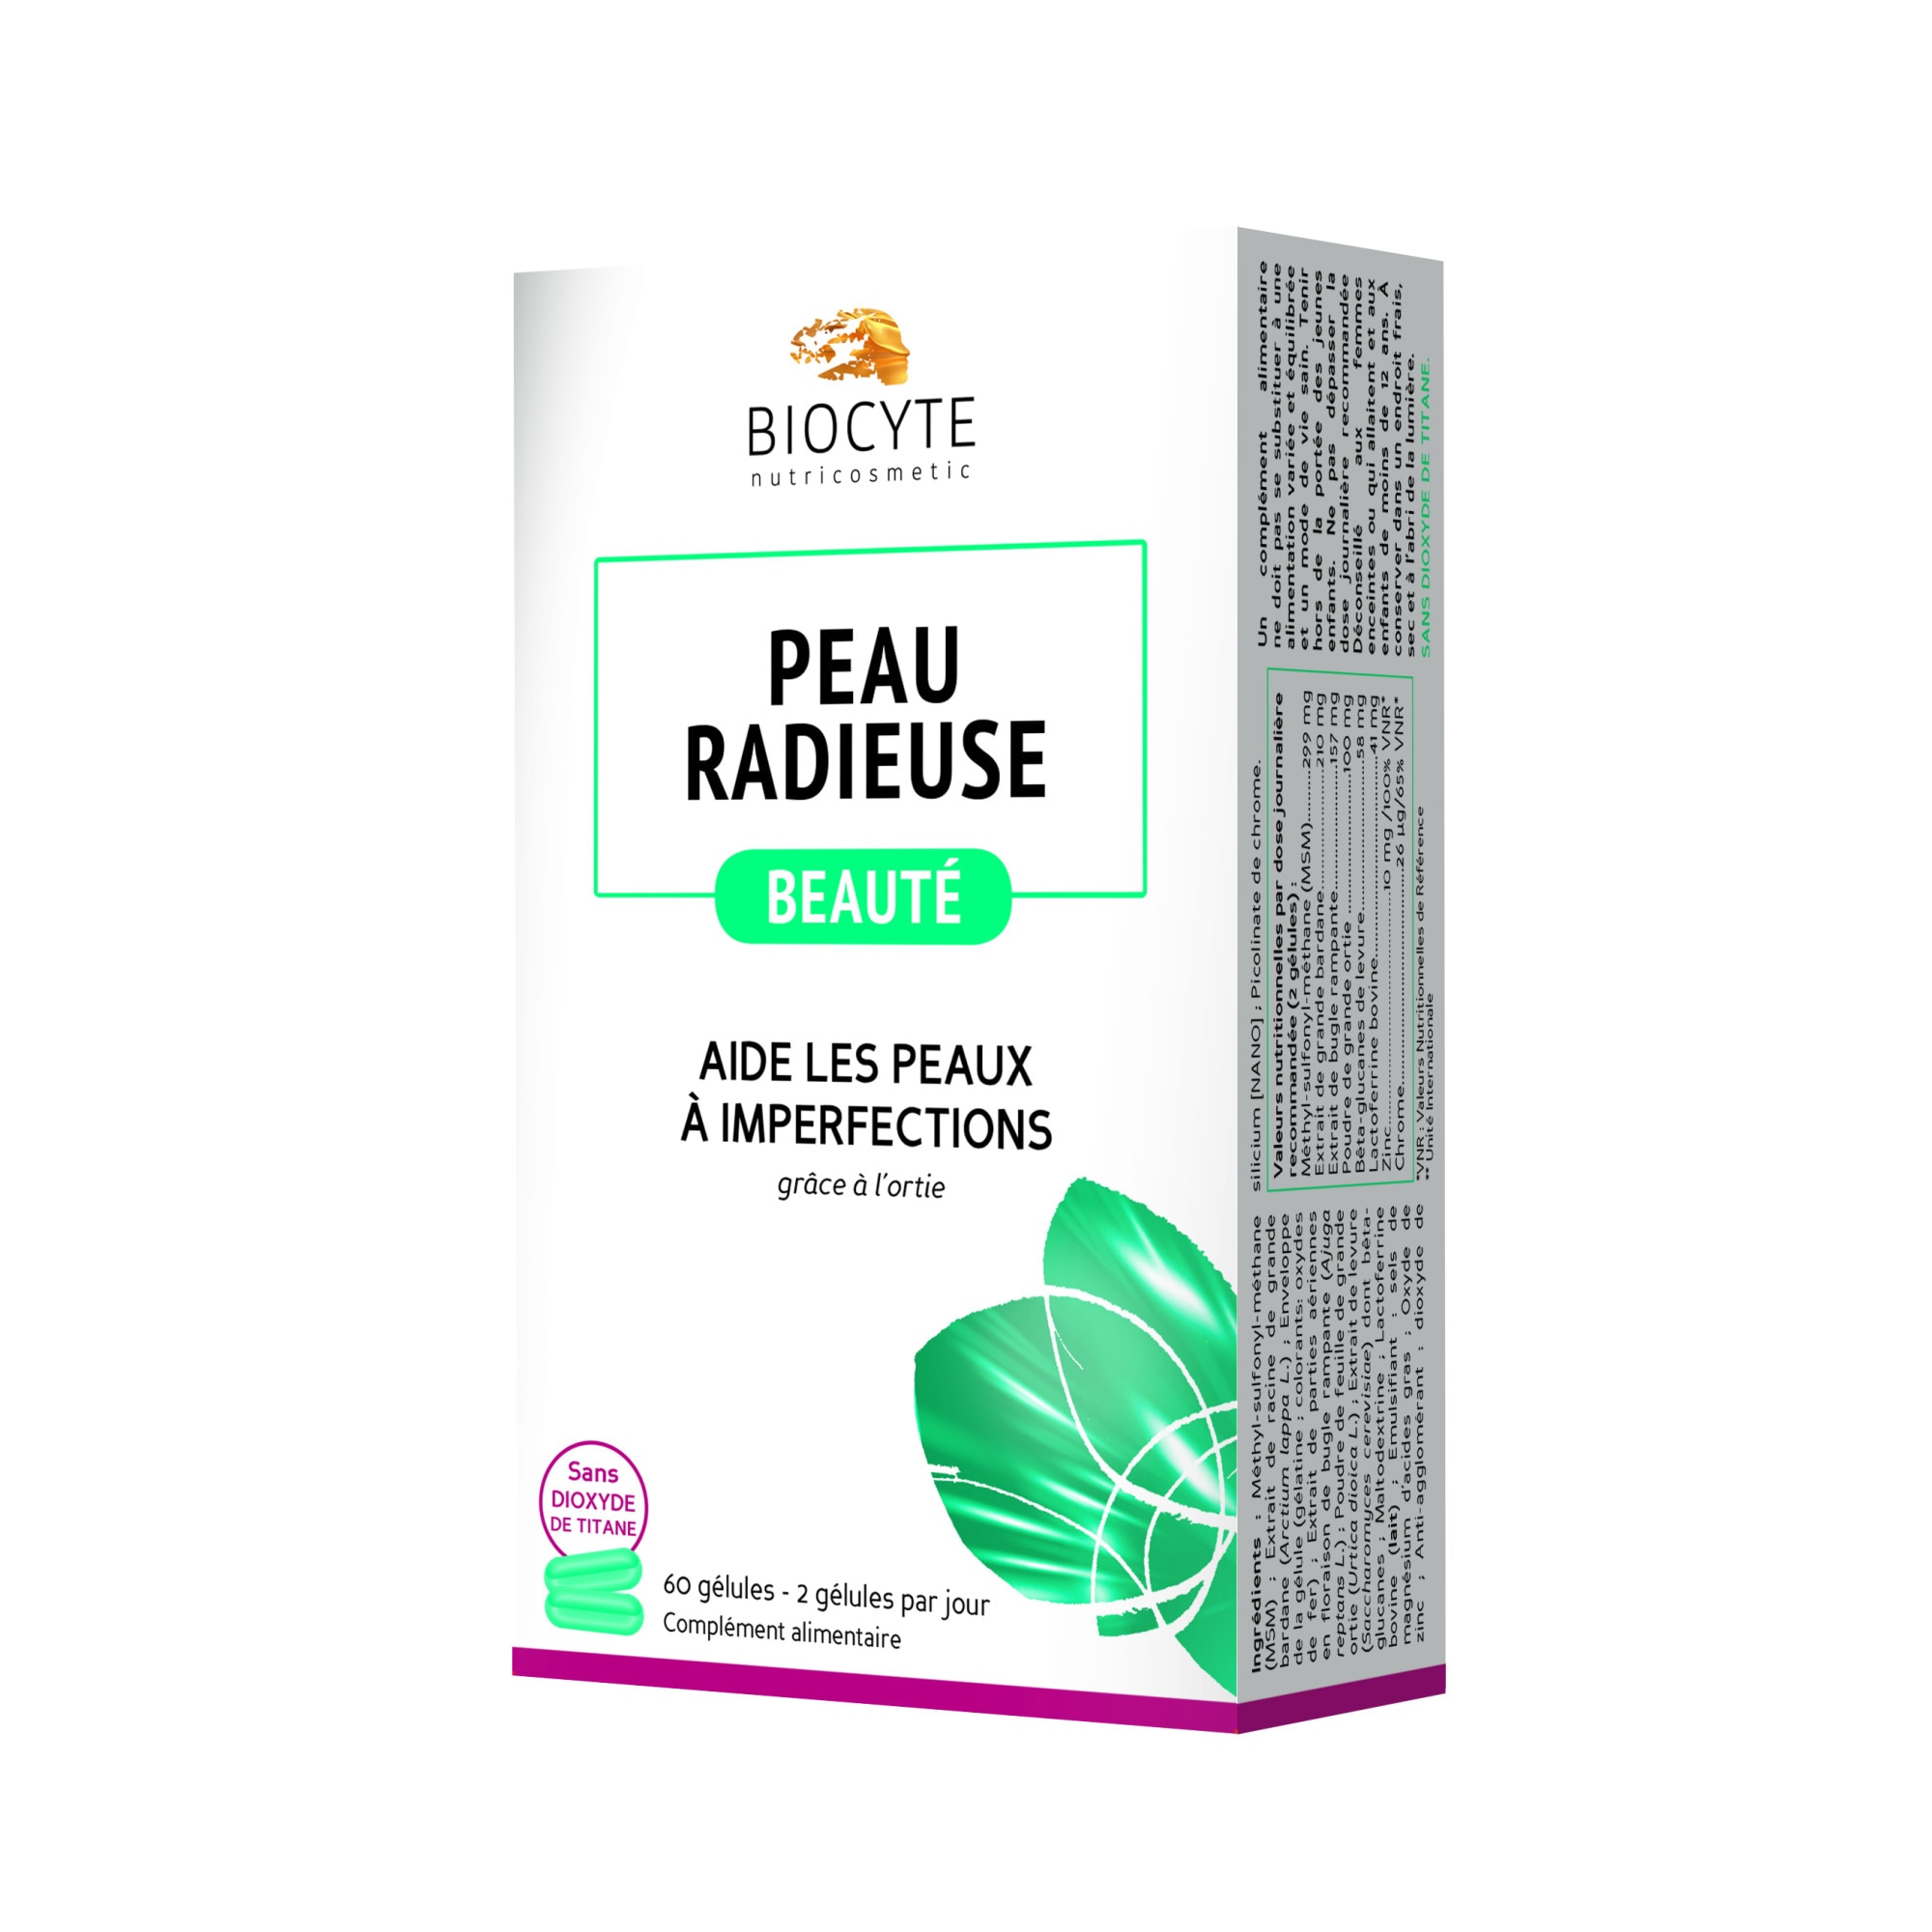 Supliment alimentar pentru ten gras cu tendința acneică Acne Out, 30 capsule, Biotrade